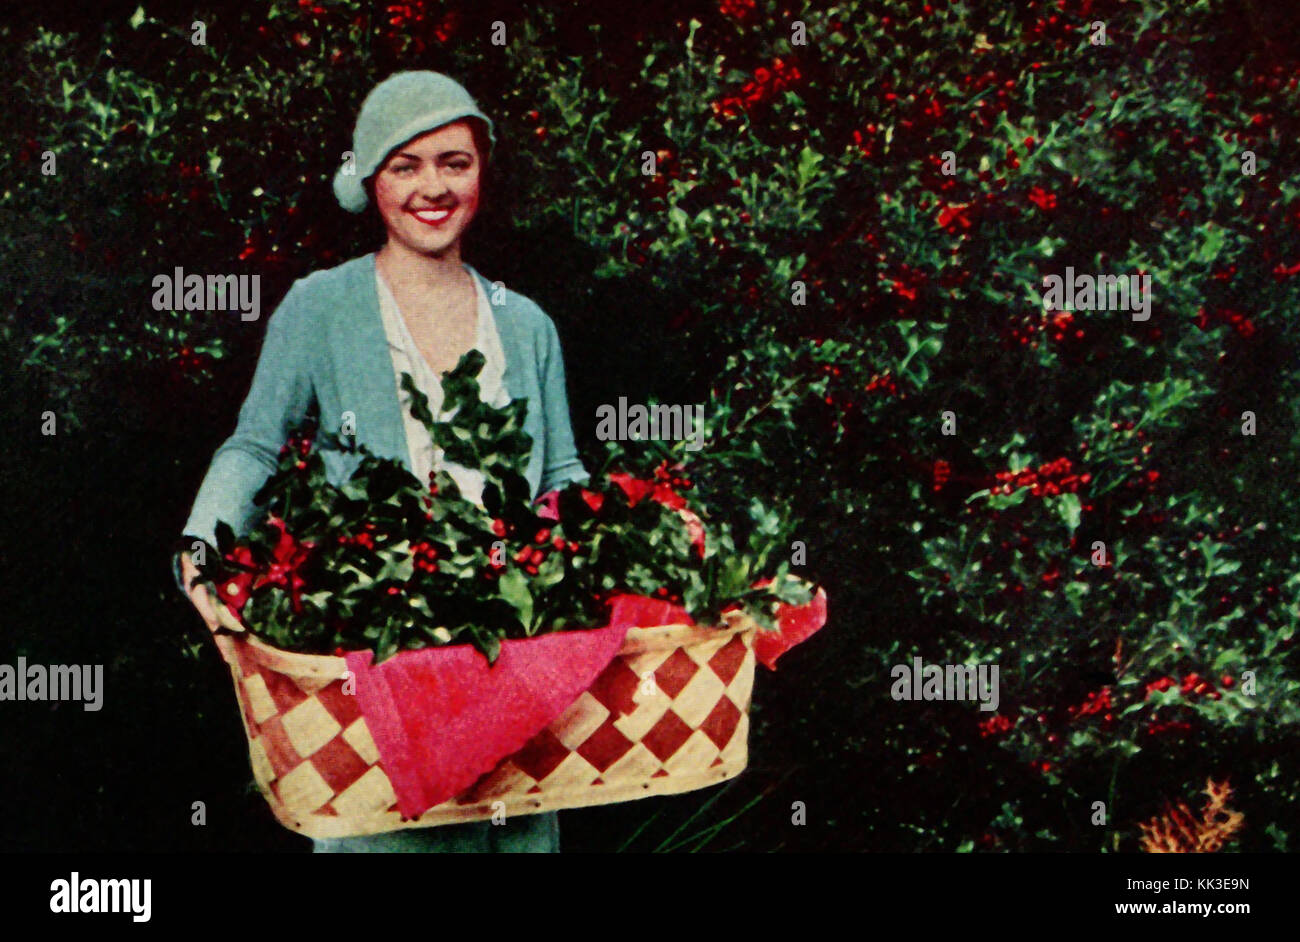 1937 - Holly wachsen für das Weihnachtsgeschäft in Gig Harbor Baumschulen USA, eine Vintage Farbe Foto Stockfoto